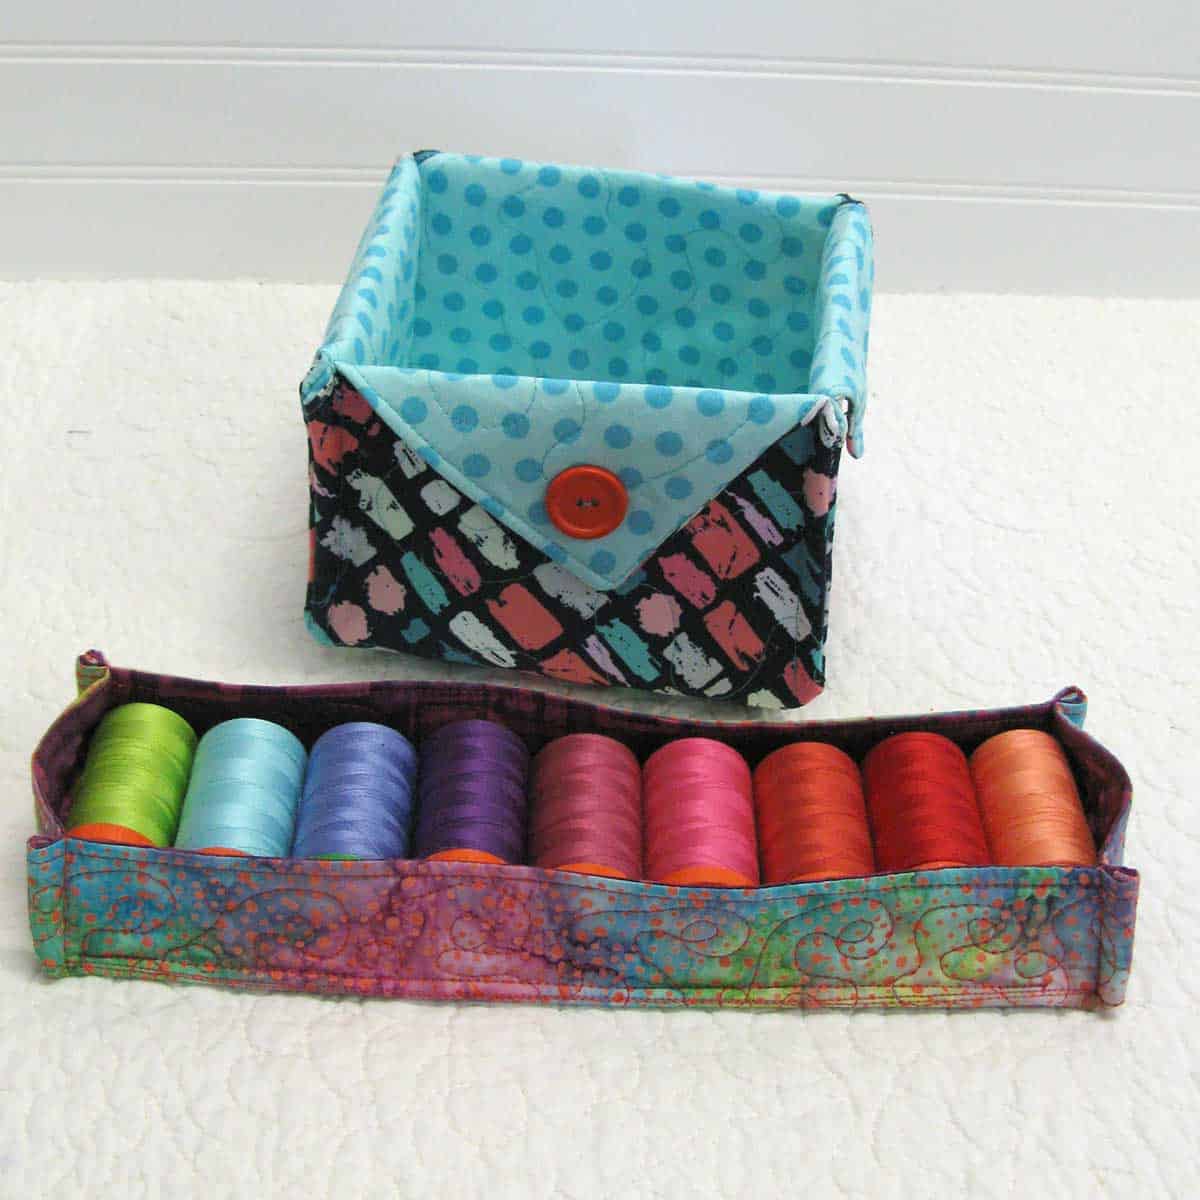 Batik quilted basket for thread